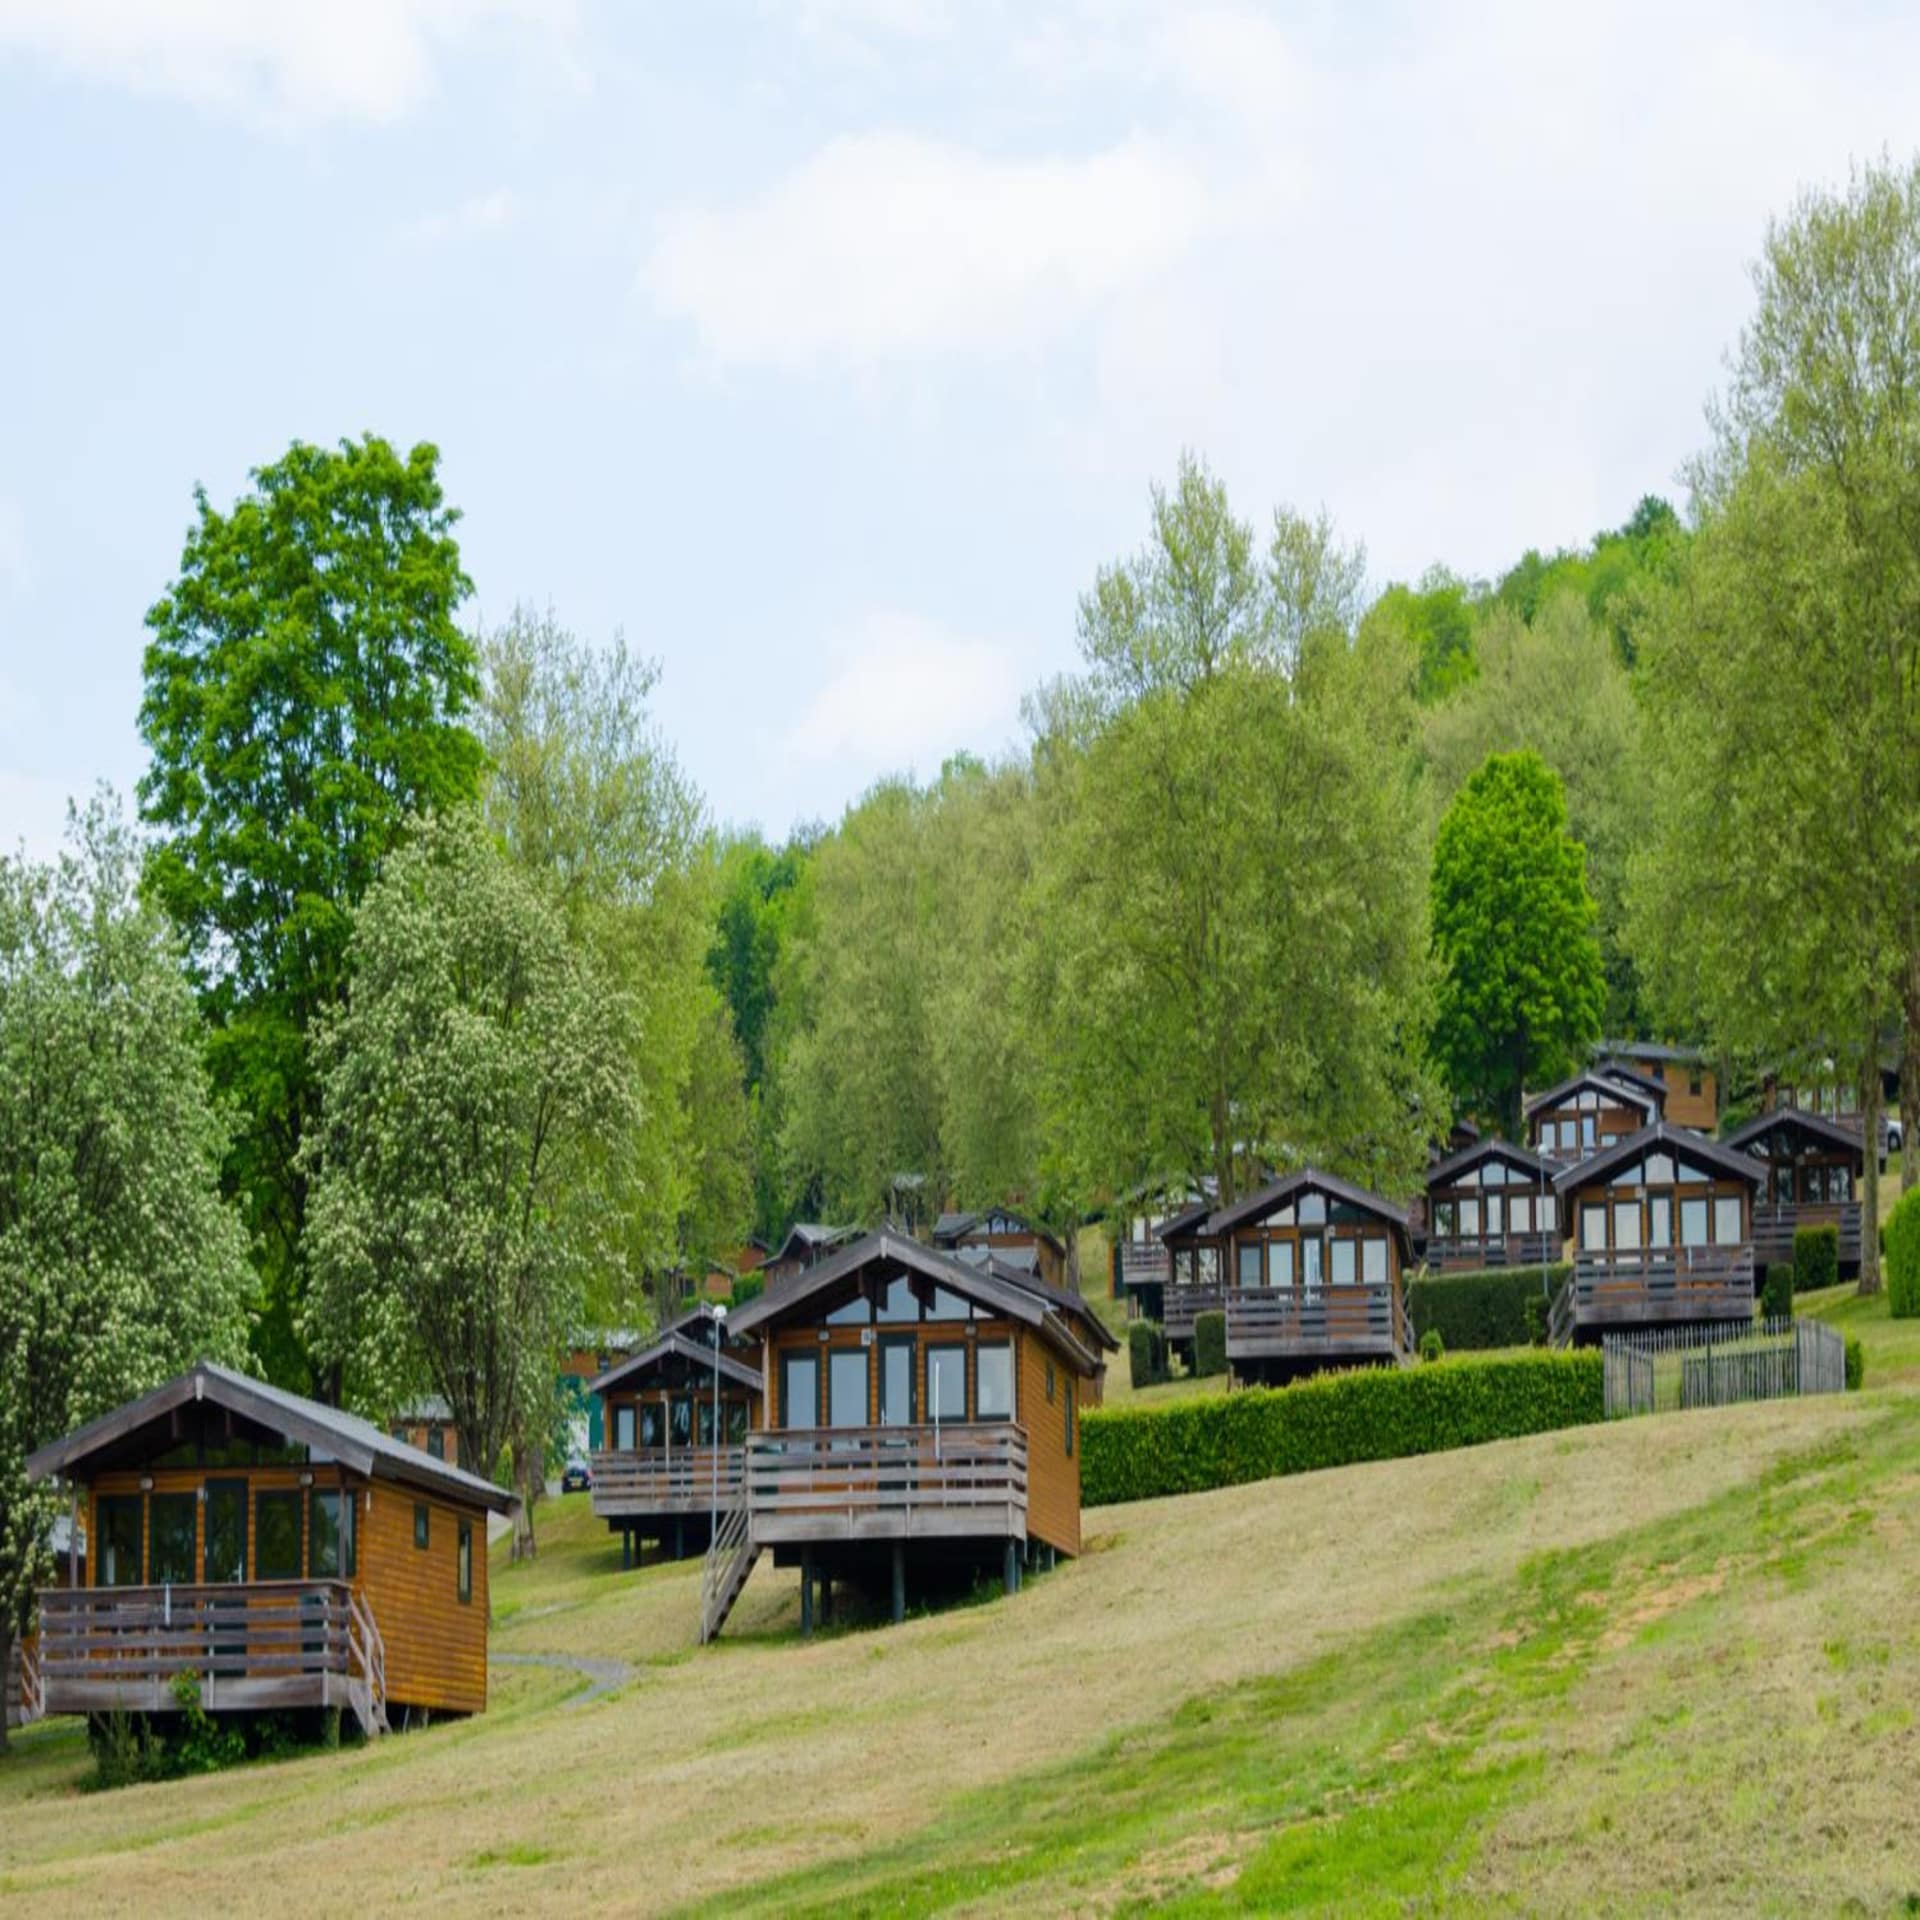 Blick auf kleine Holzhäuser in einem Ferienpark im Grünen